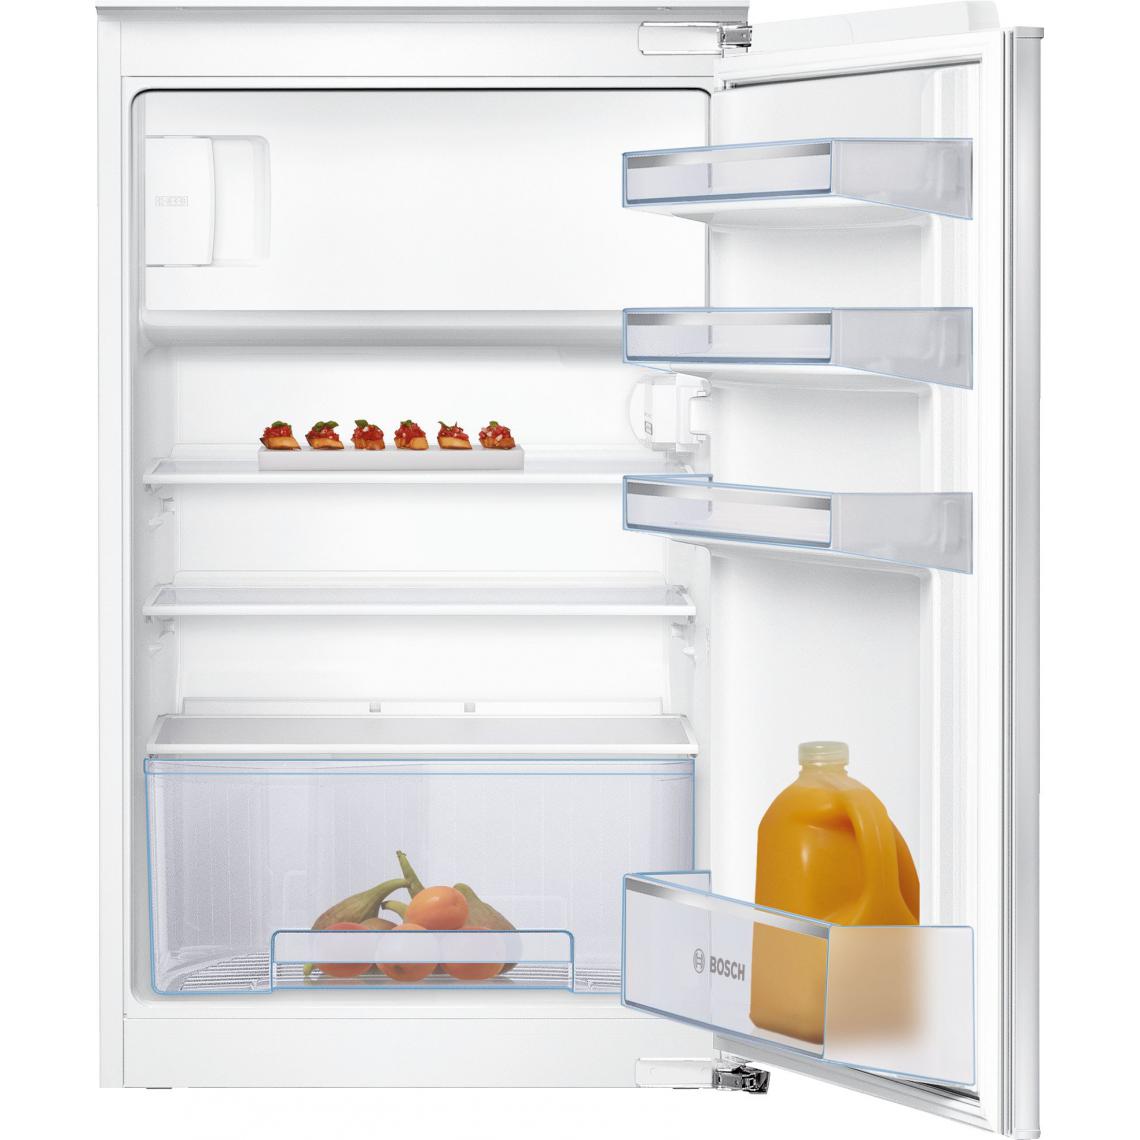 Bosch - Réfrigérateur 1 porte intégrable - KIL18NSF0 - SER2 - Classe énergie A++ - 88x56cm - Blanc - Réfrigérateur